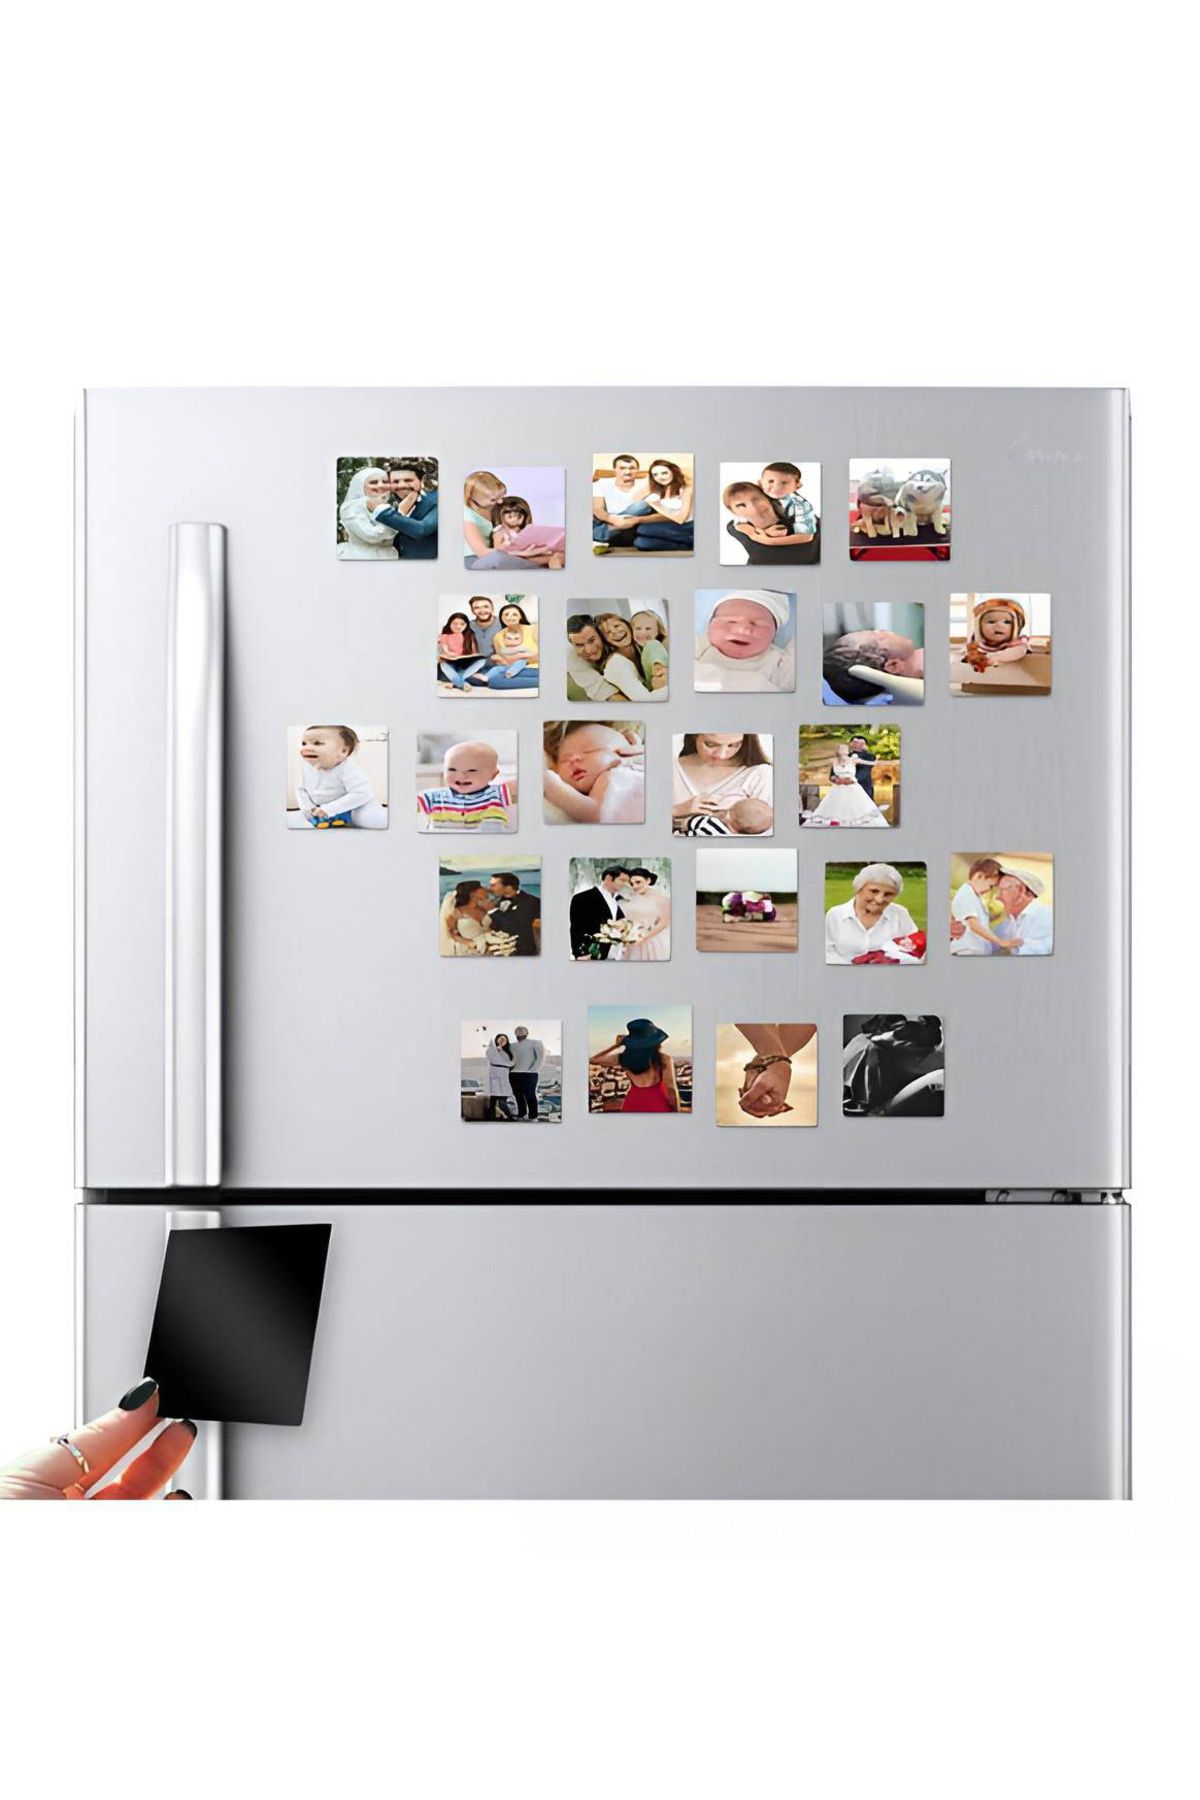 ALTAŞ 20 Adet Resimli Kişiye Özel Buzdolabı Magneti 6x6 Boyutunda